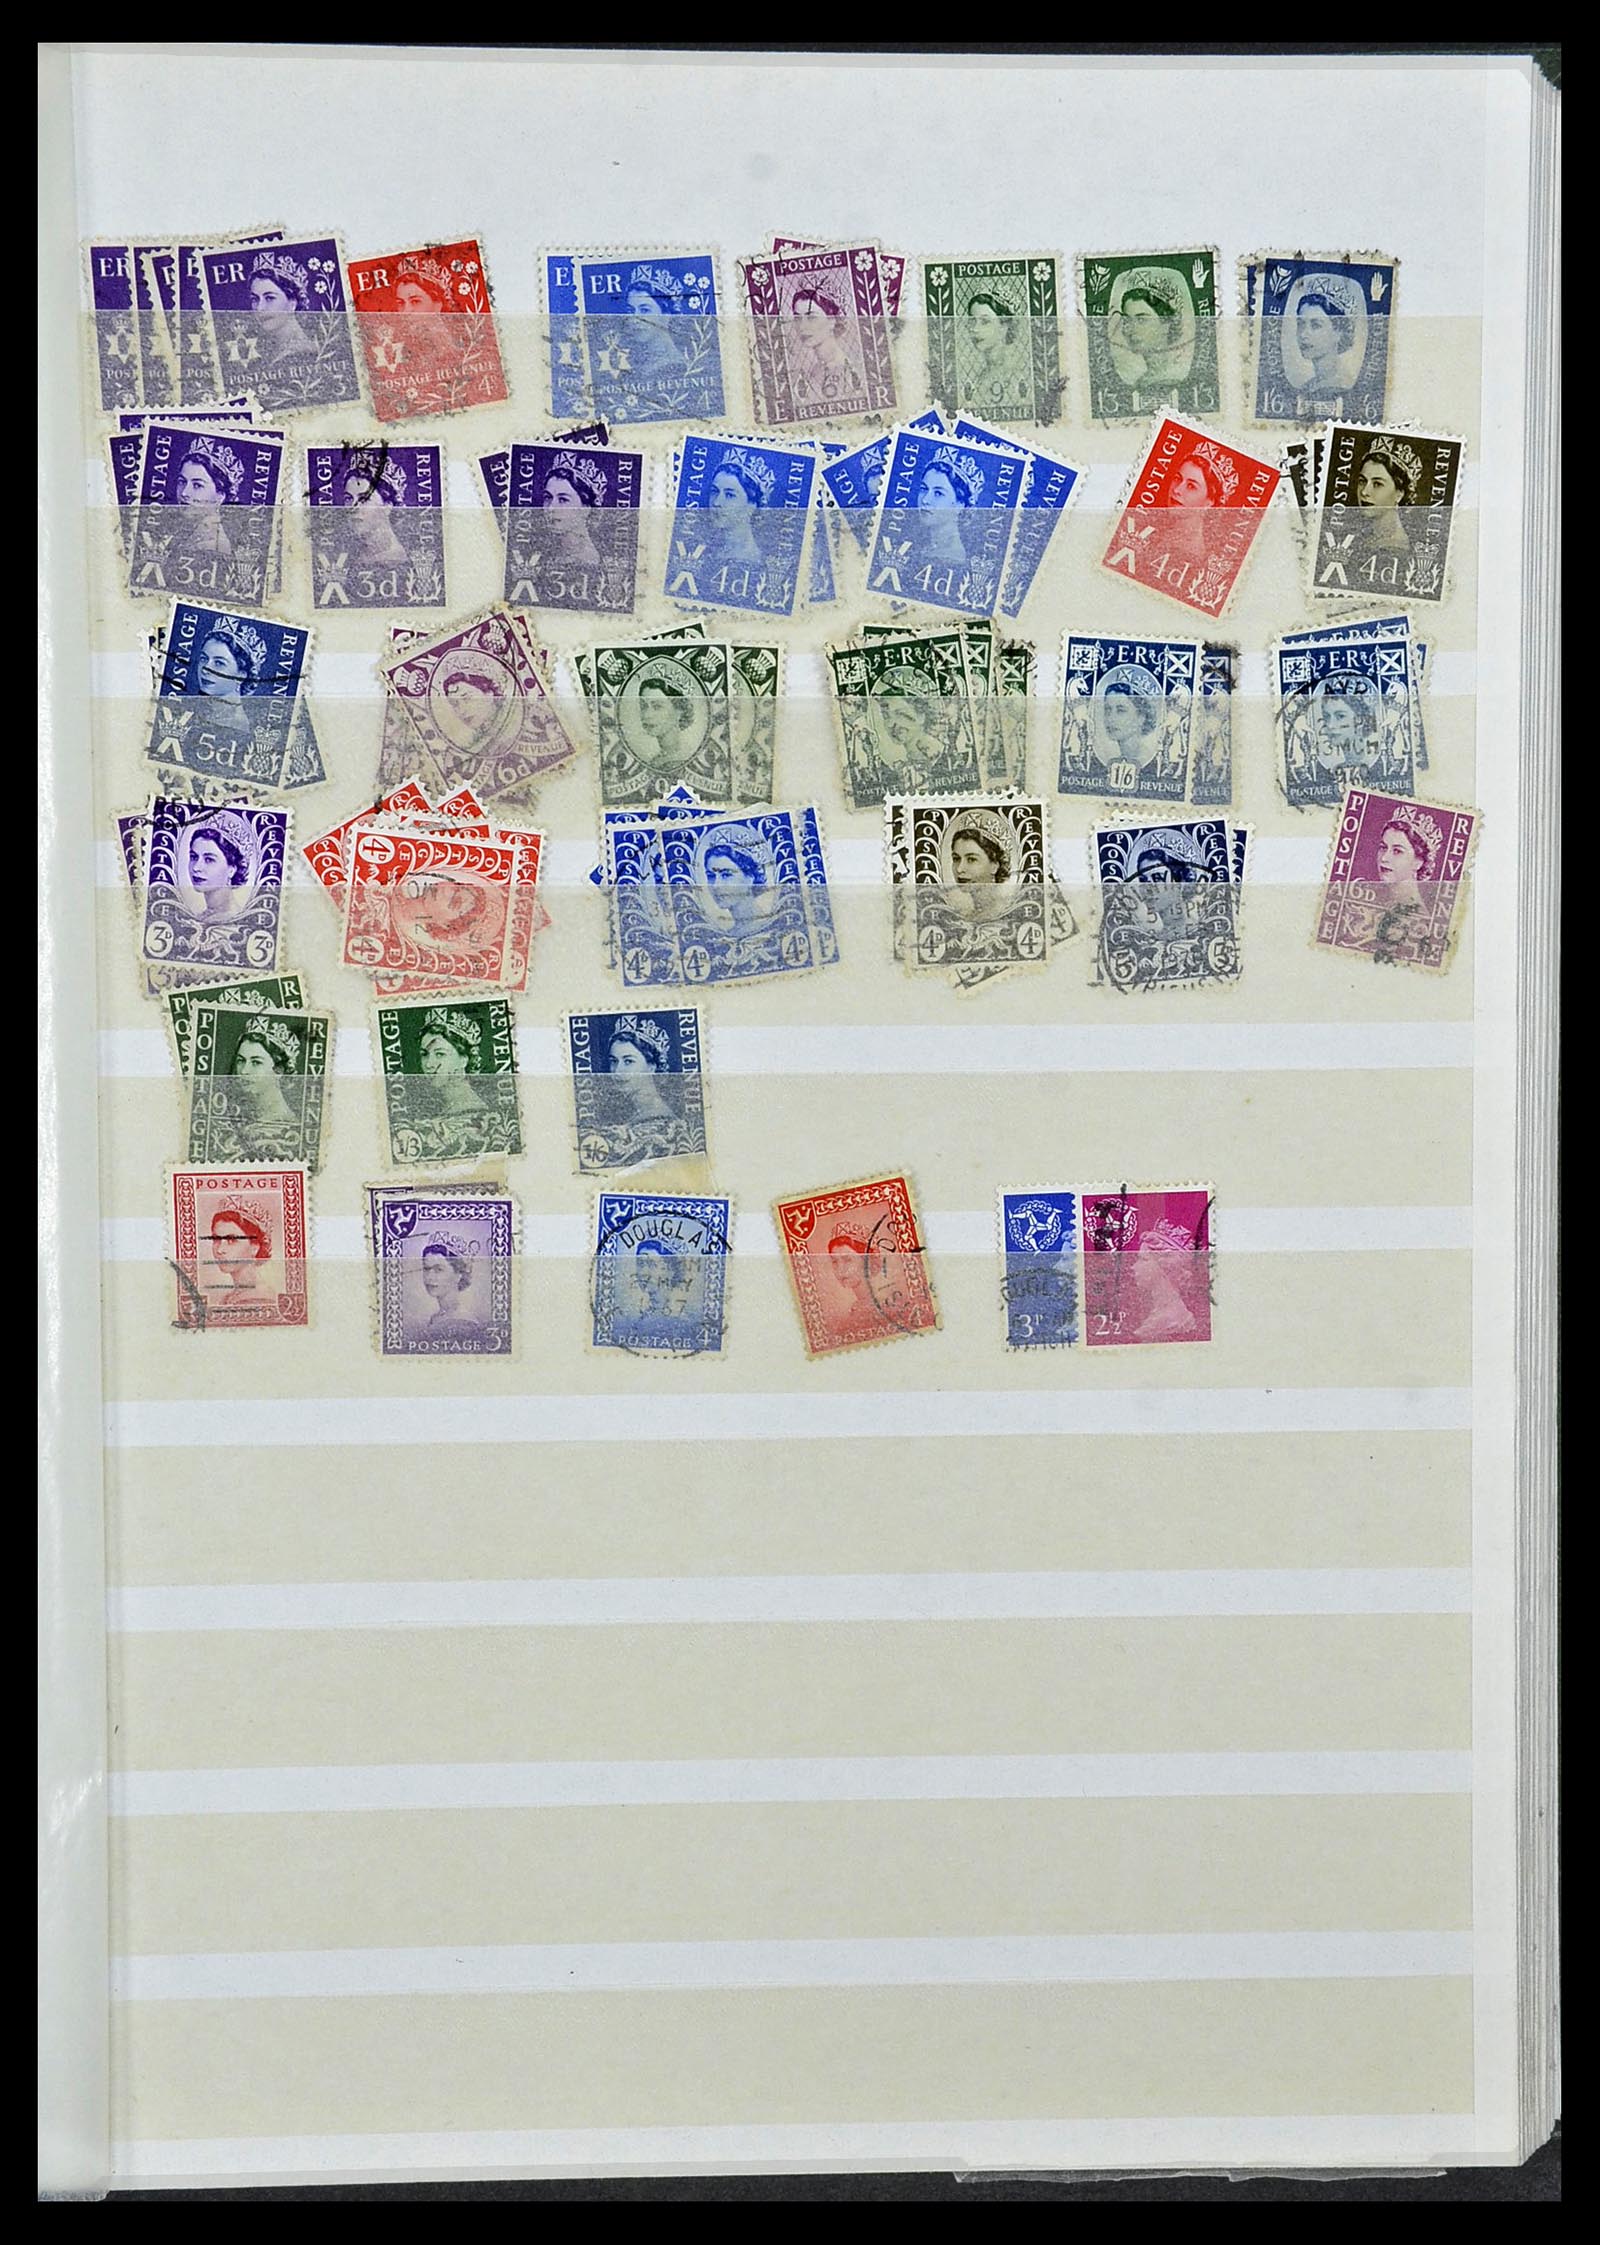 34368 115 - Postzegelverzameling 34368 Engeland uitzoekpartij 1858-1990.